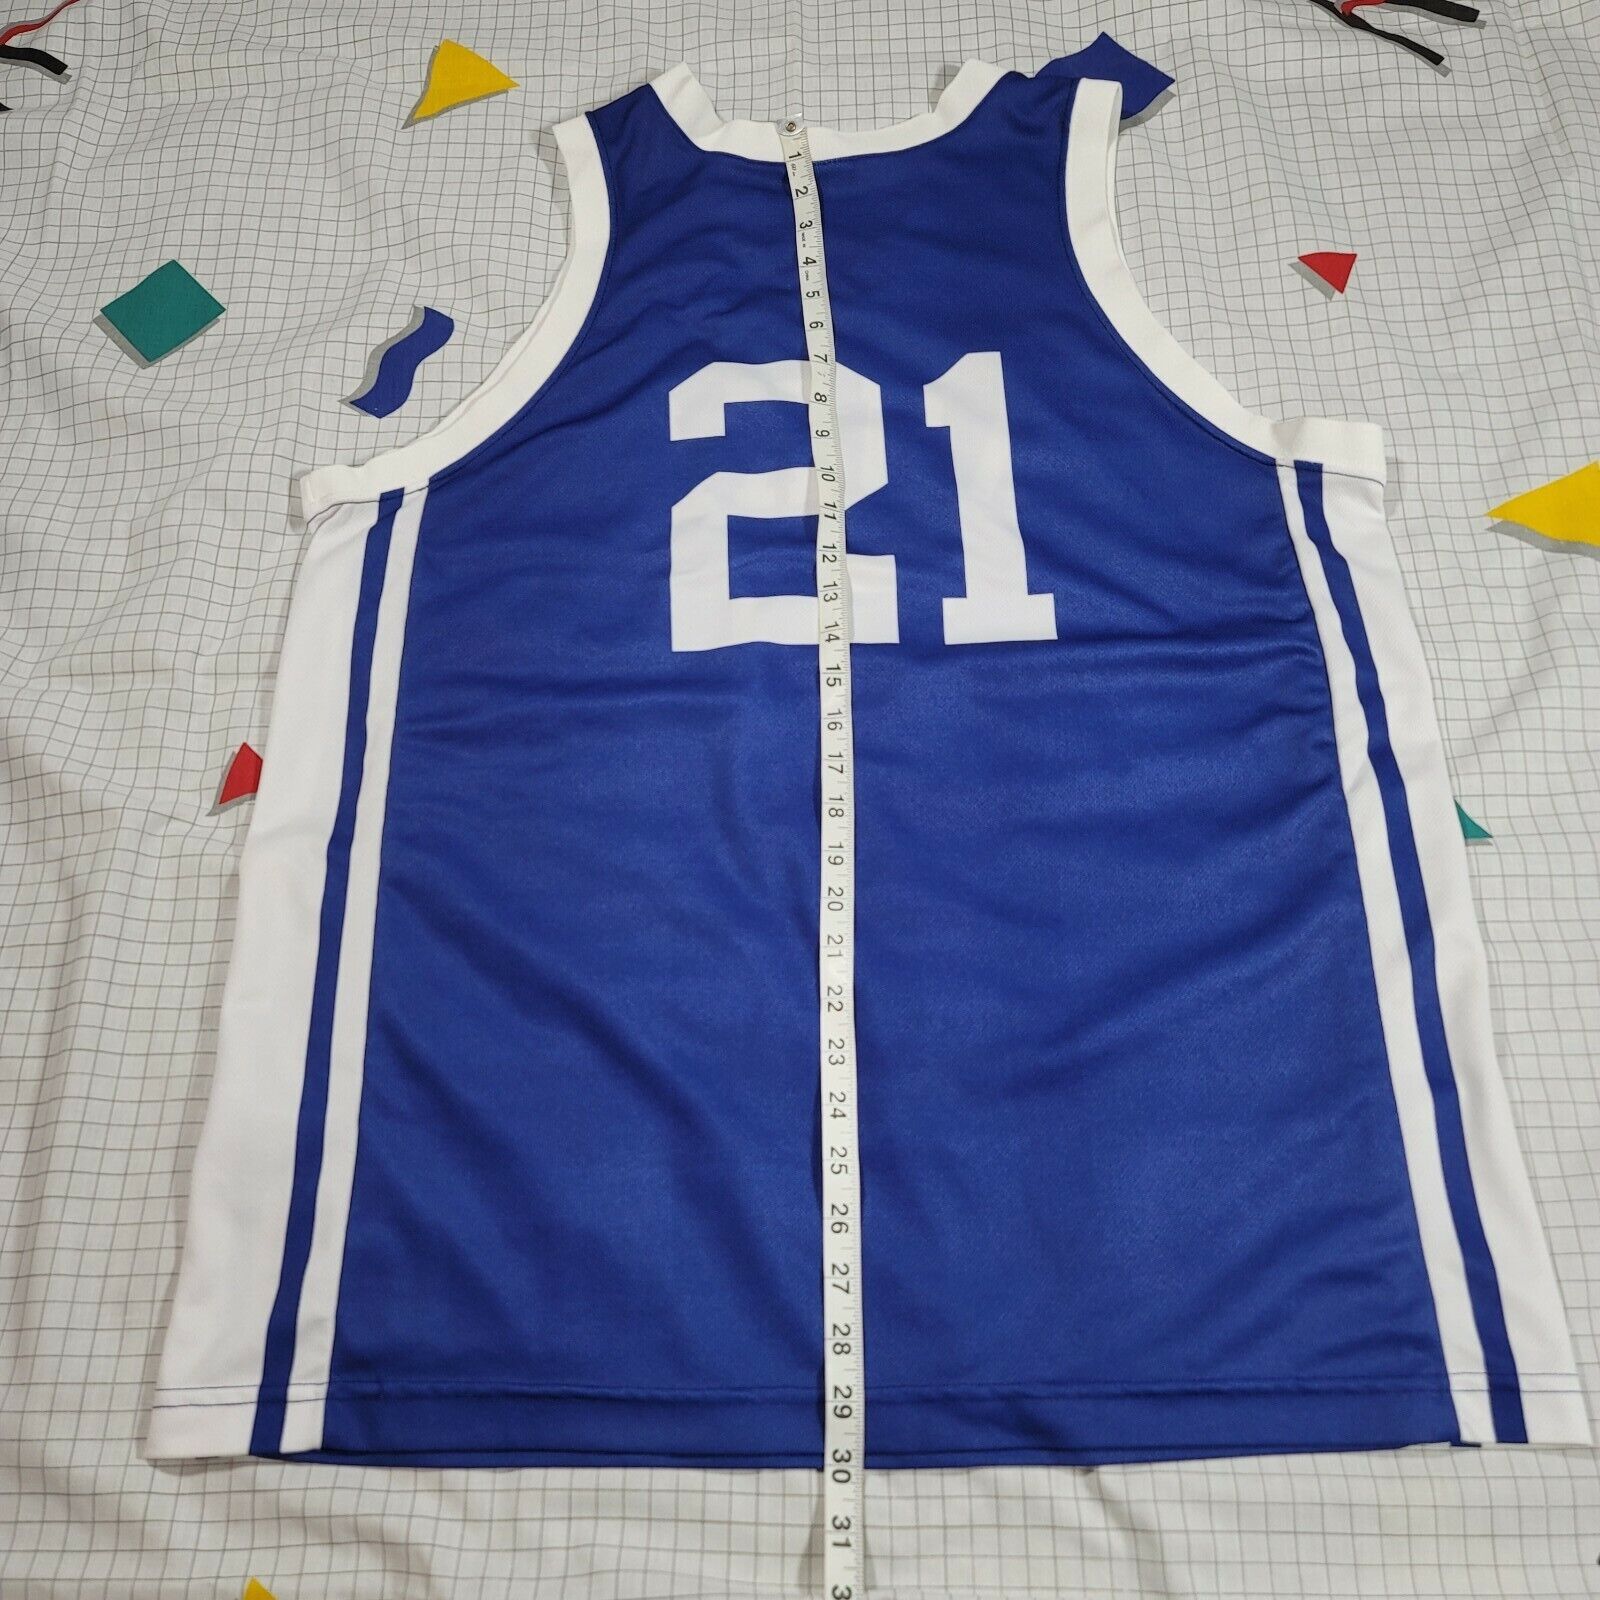 Nike Duke University Blue Devils 00 jersey (M) NWT *sample* – The